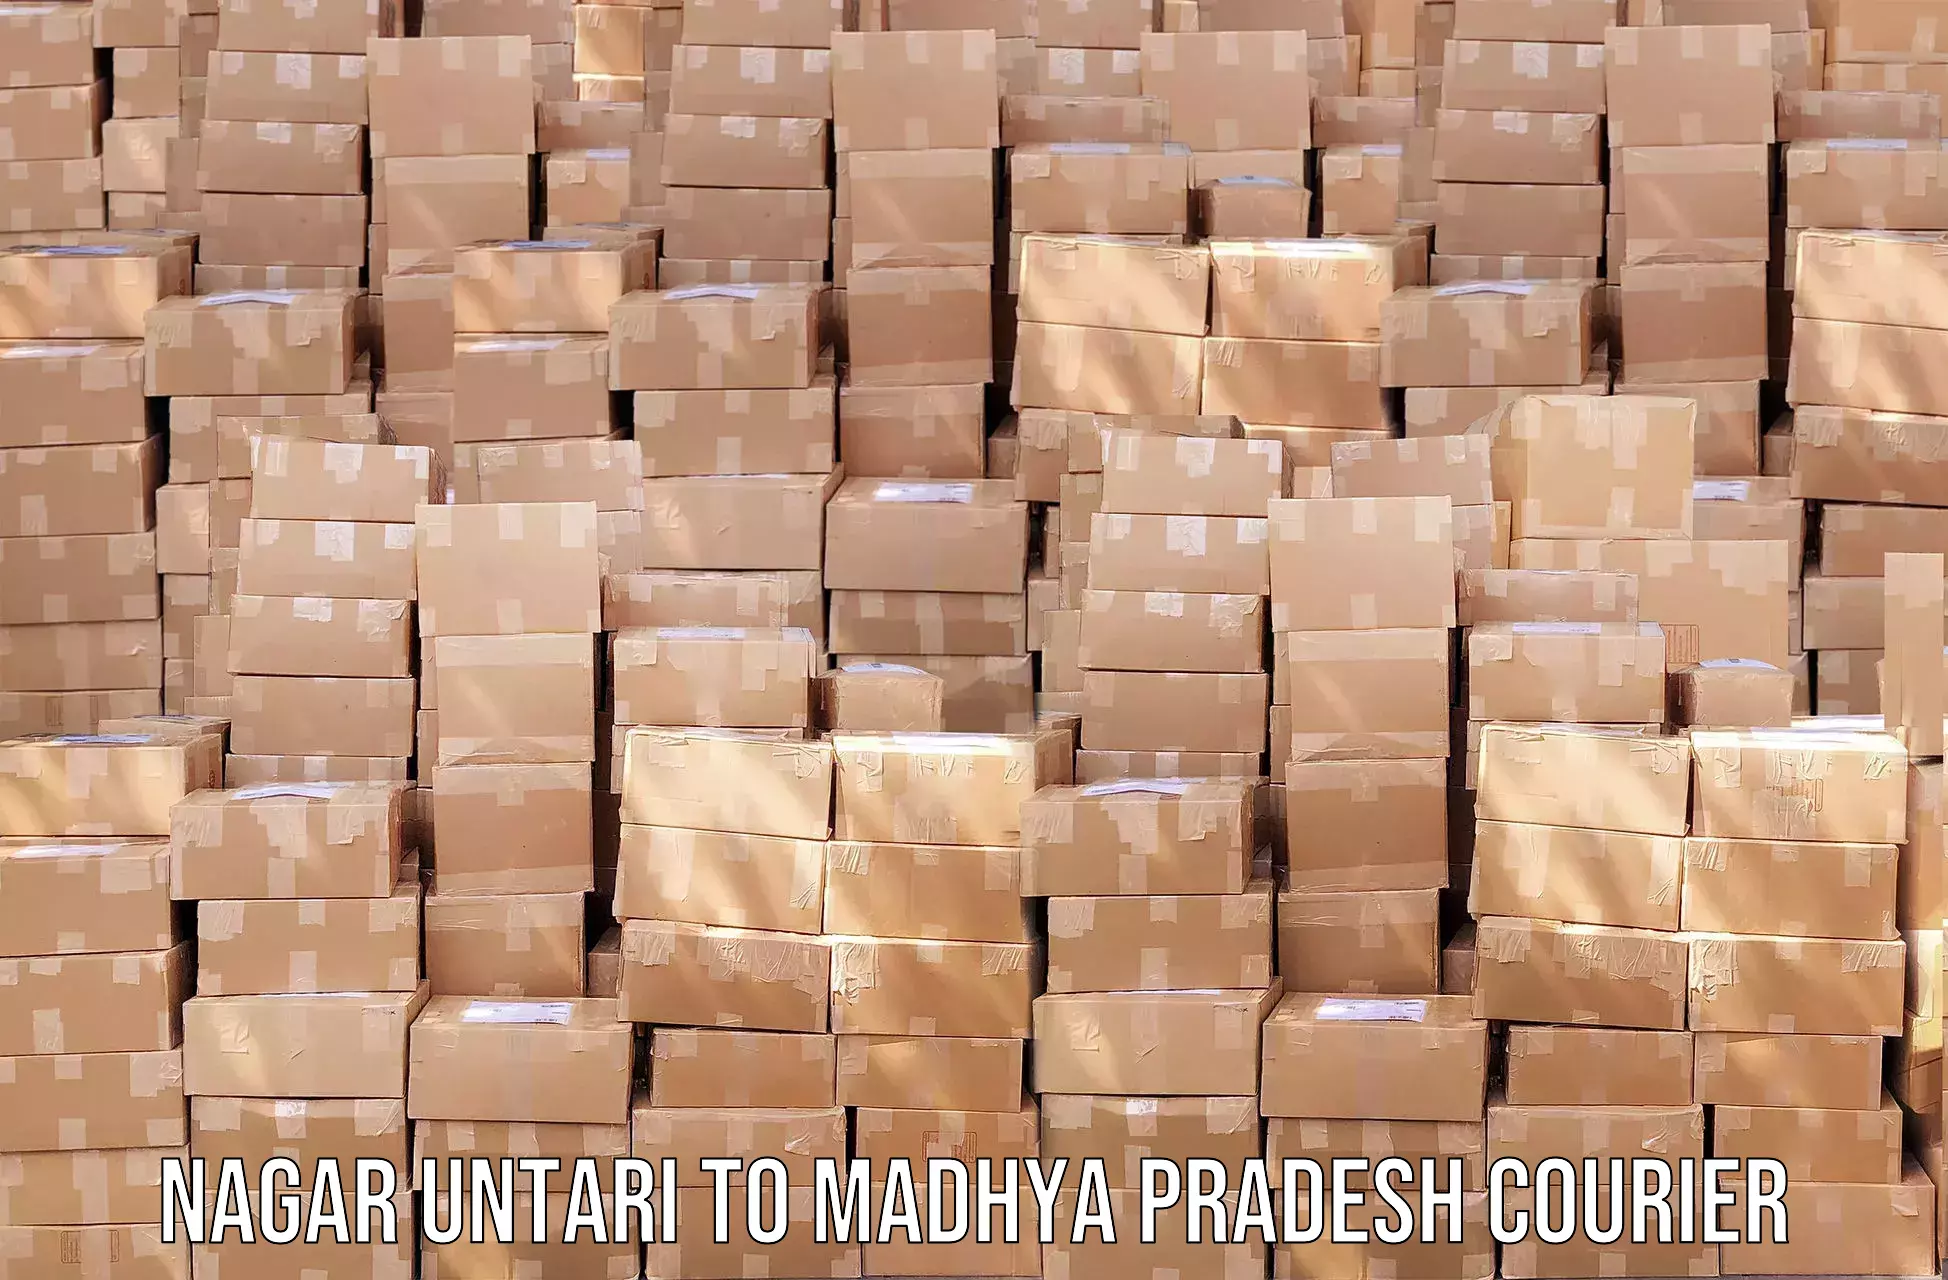 Personal parcel delivery in Nagar Untari to Sohagi